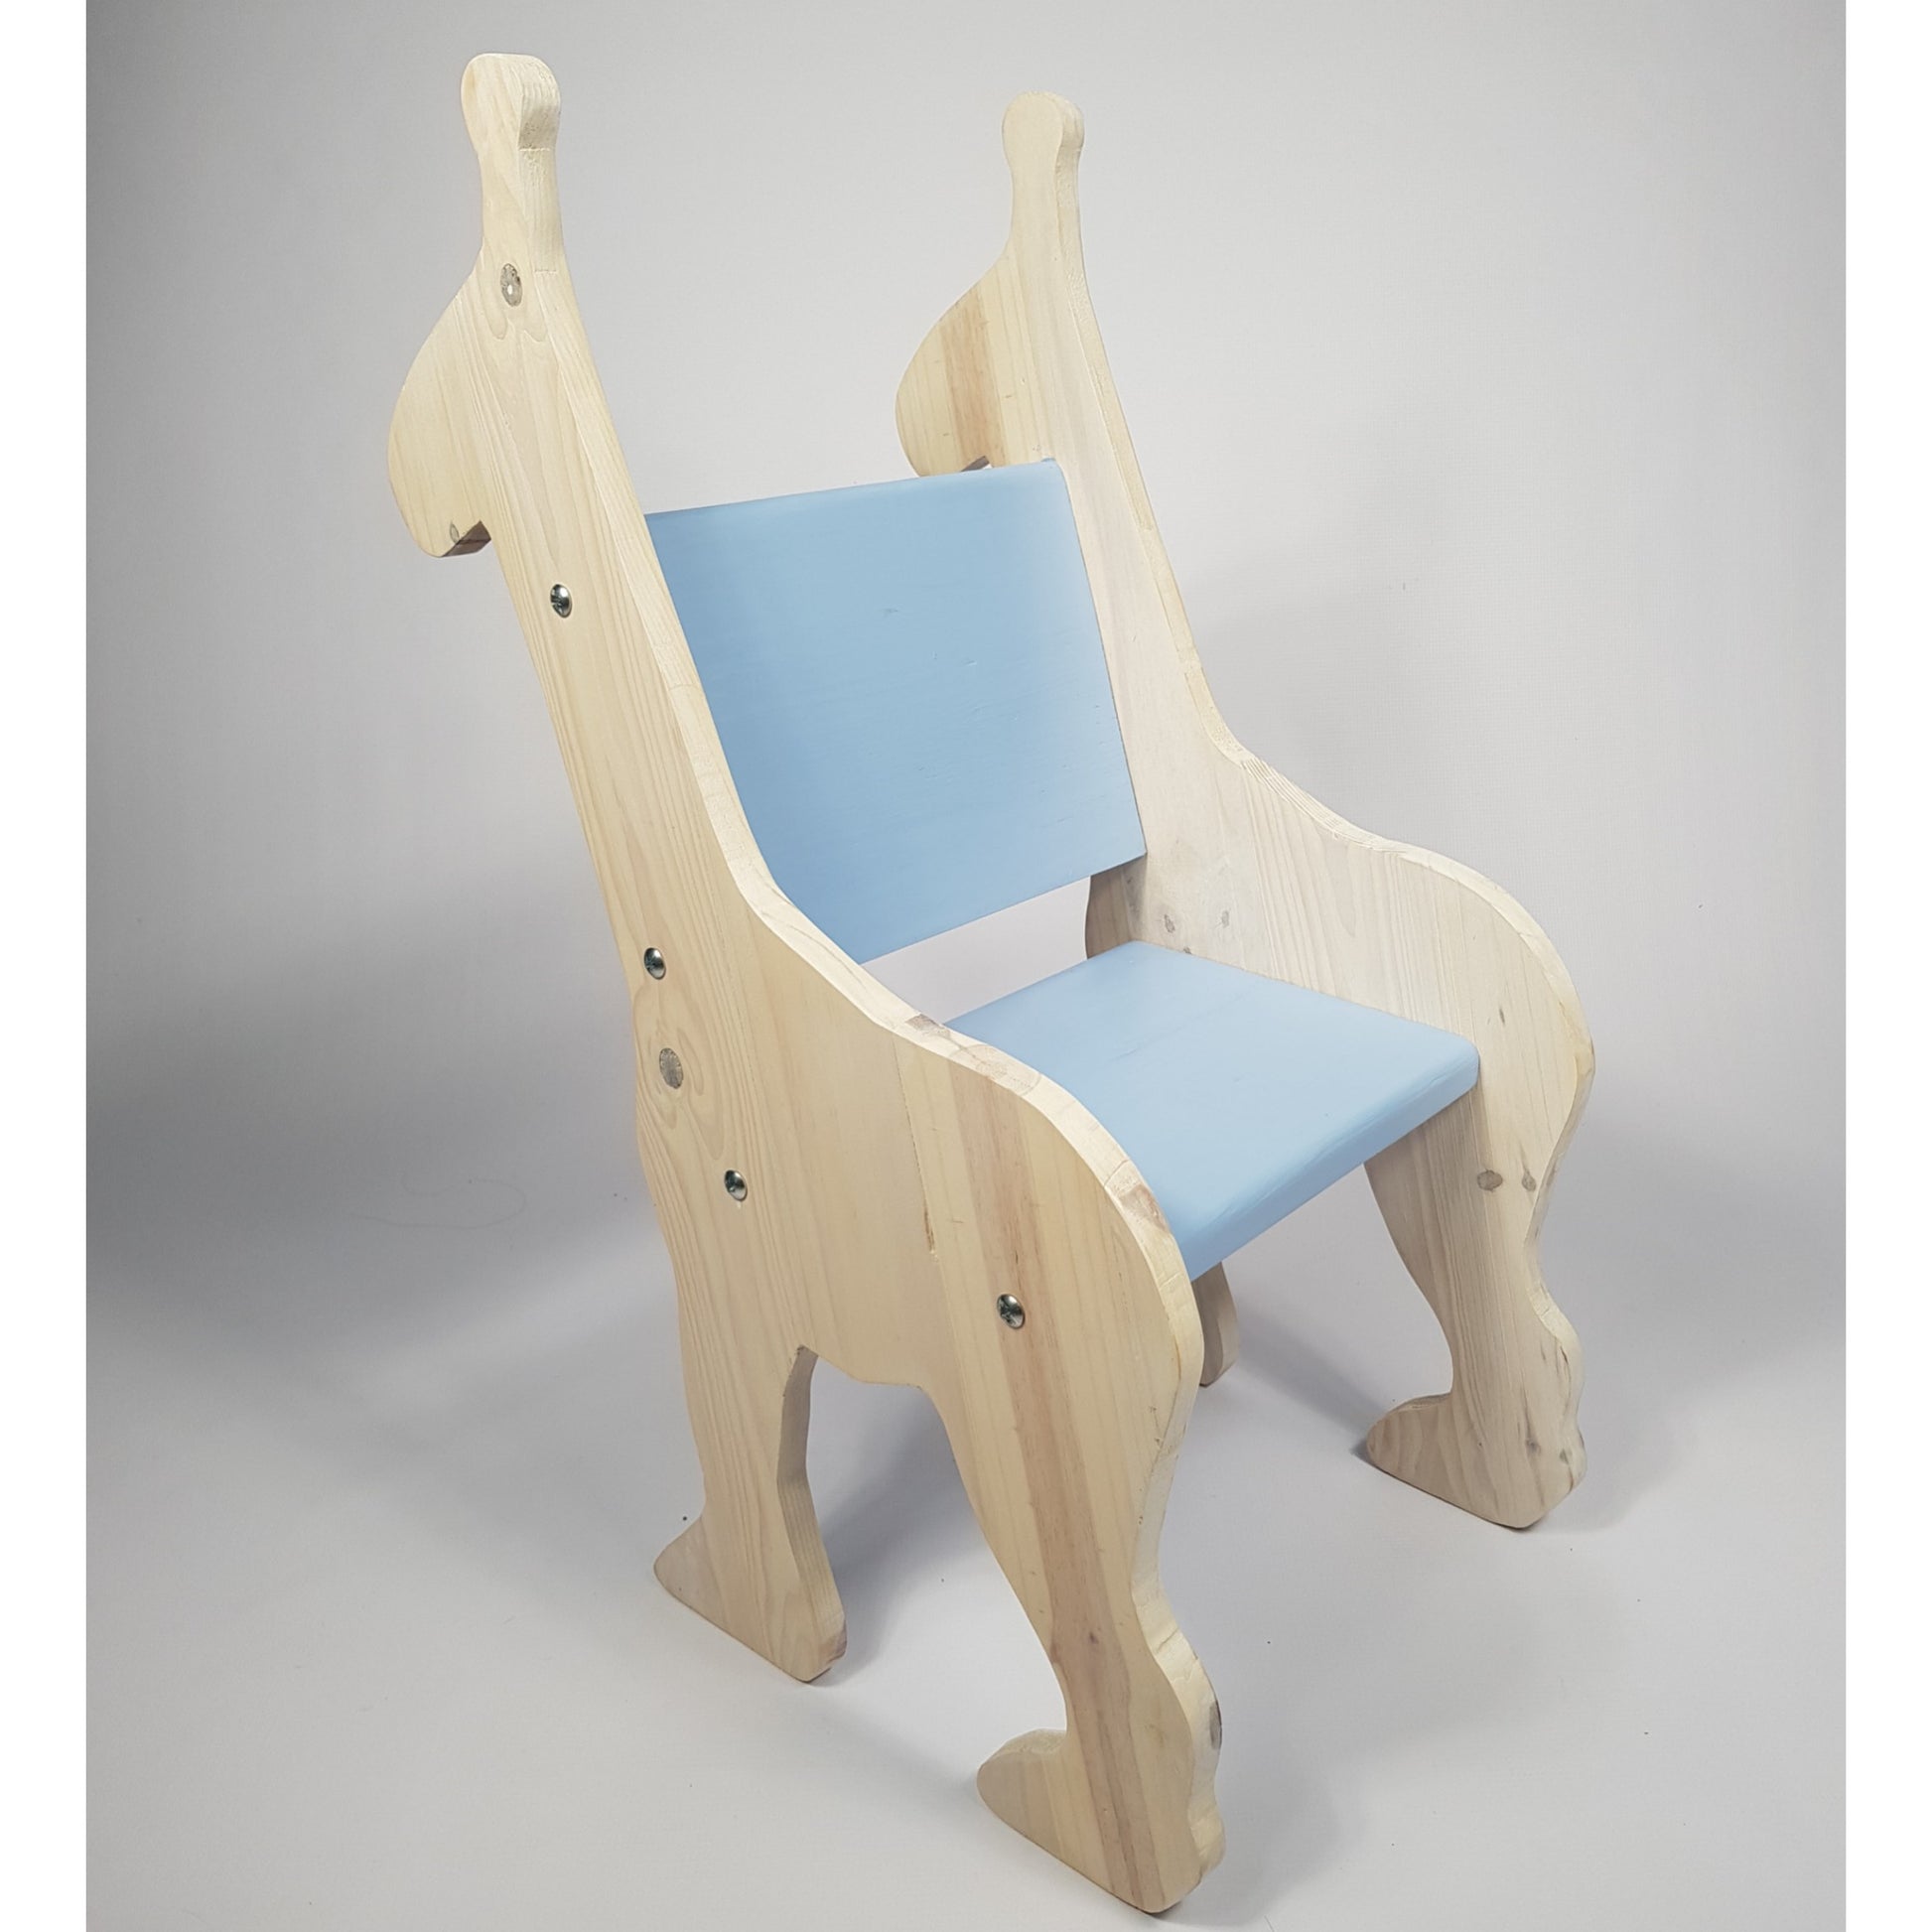 Bunny/Giraffe Chair - Furniture